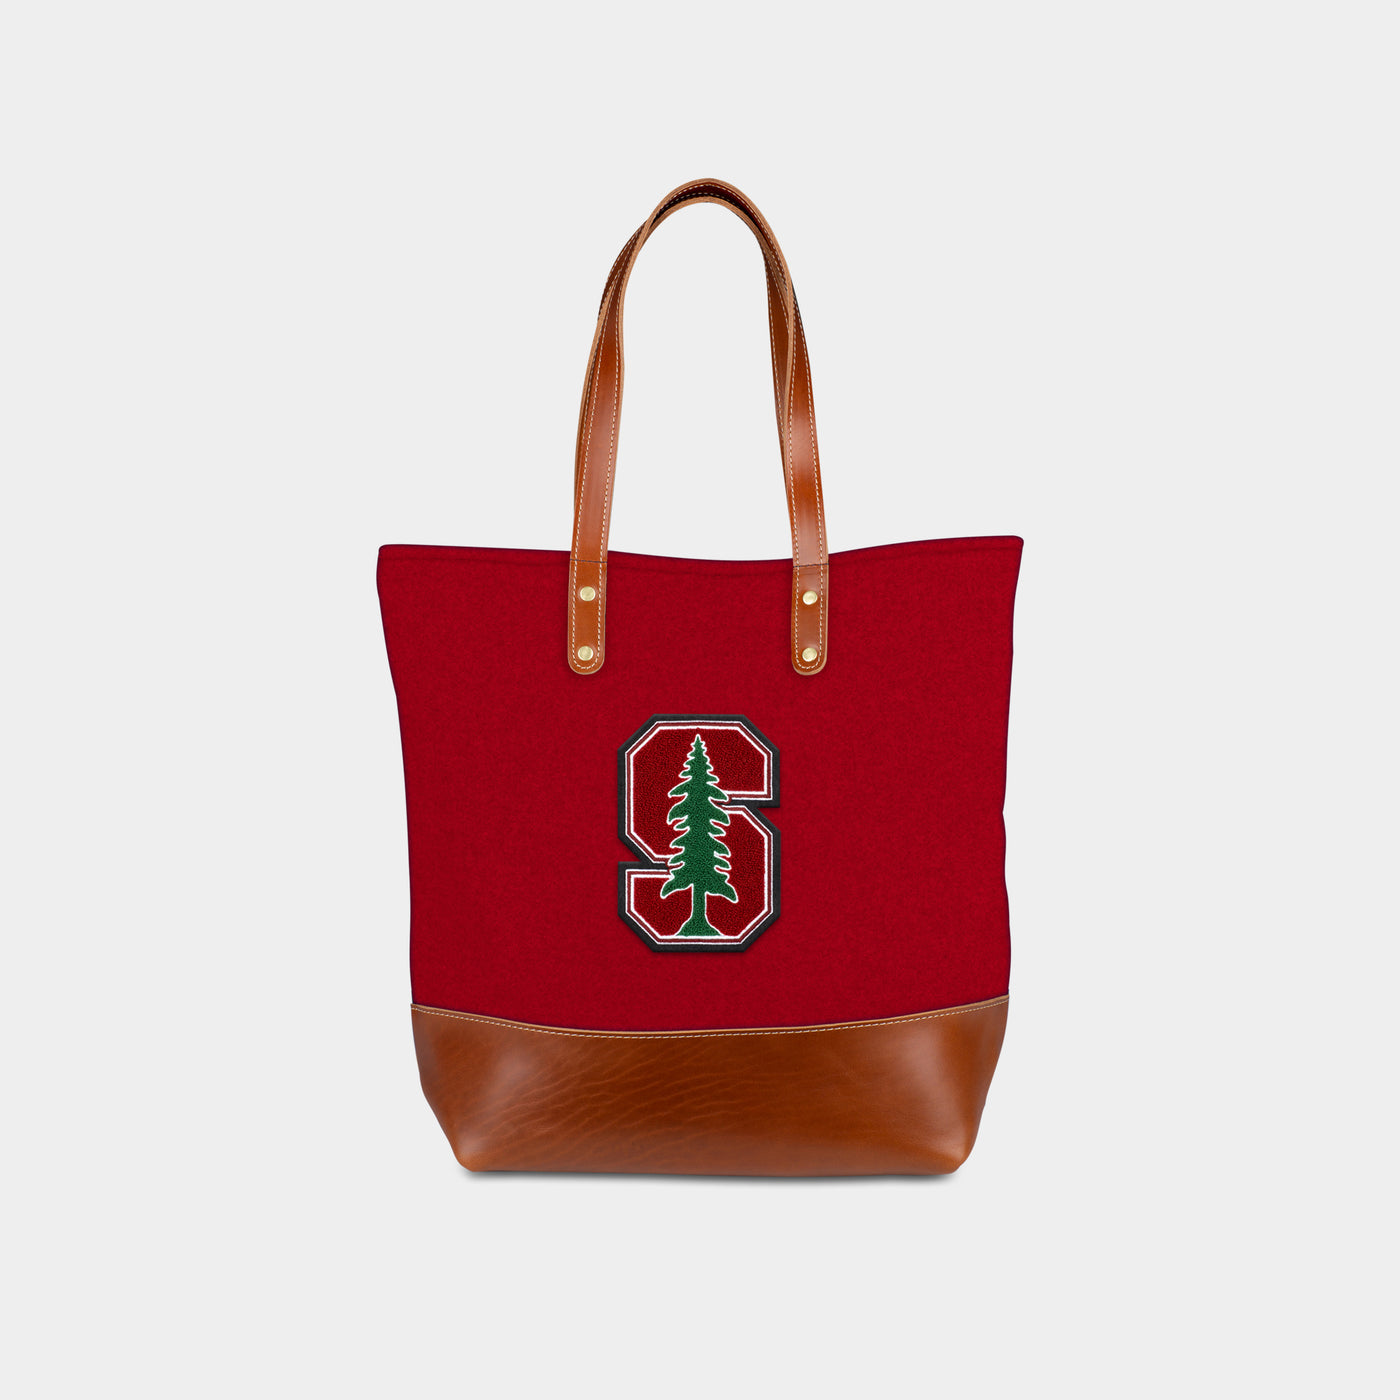 Stanford Cardinal Tote Bag